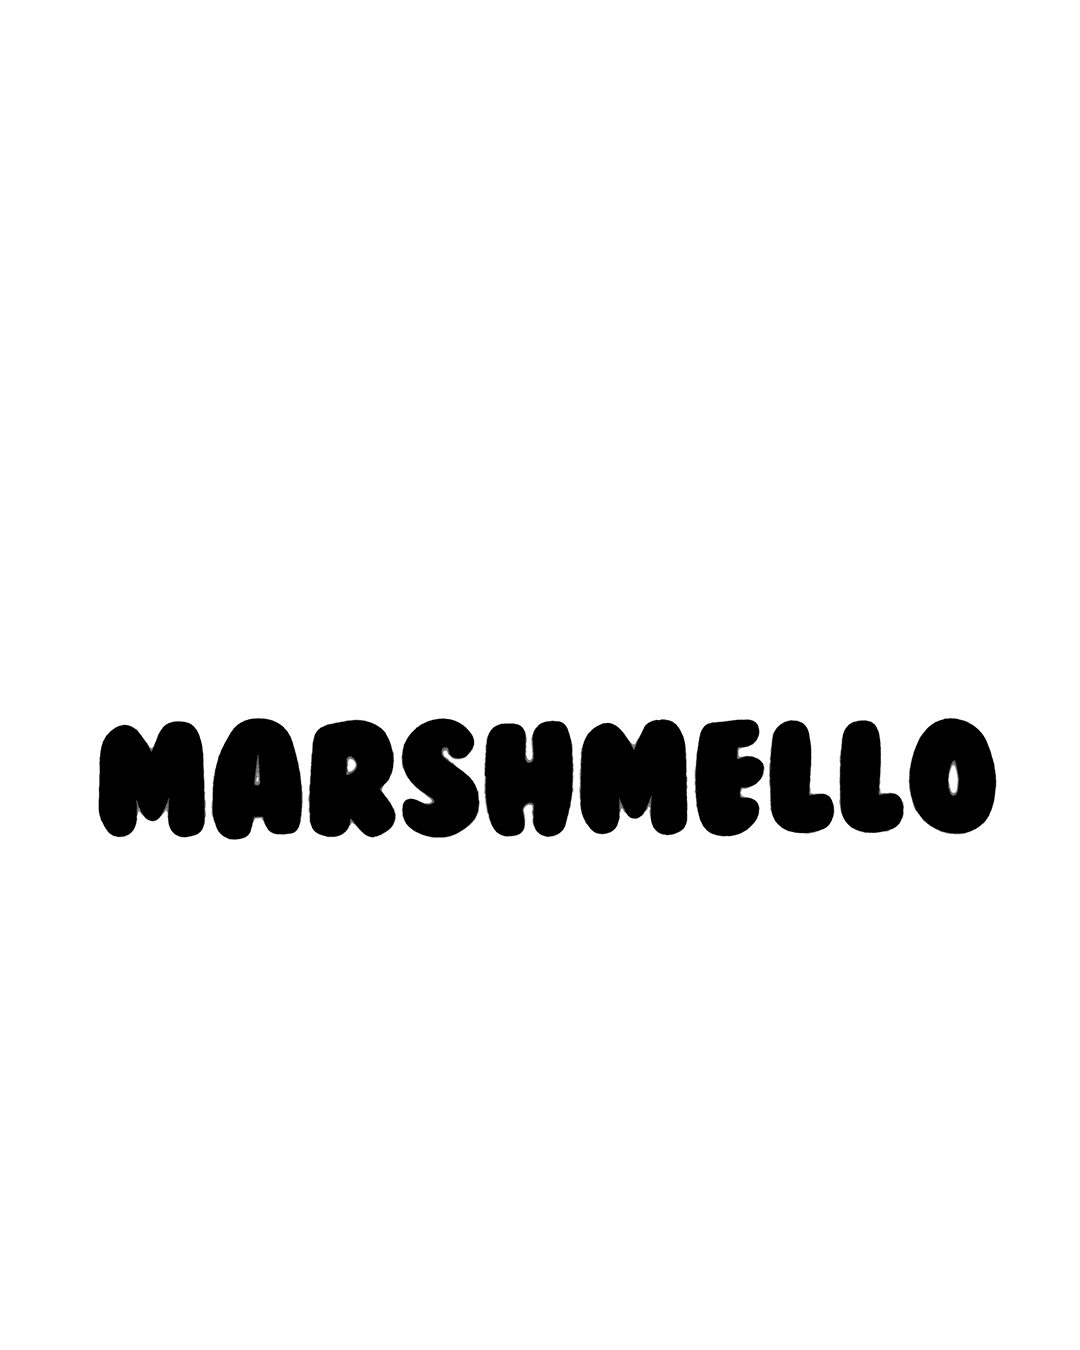 Marshmello - Marshmello - Sticker | TeePublic